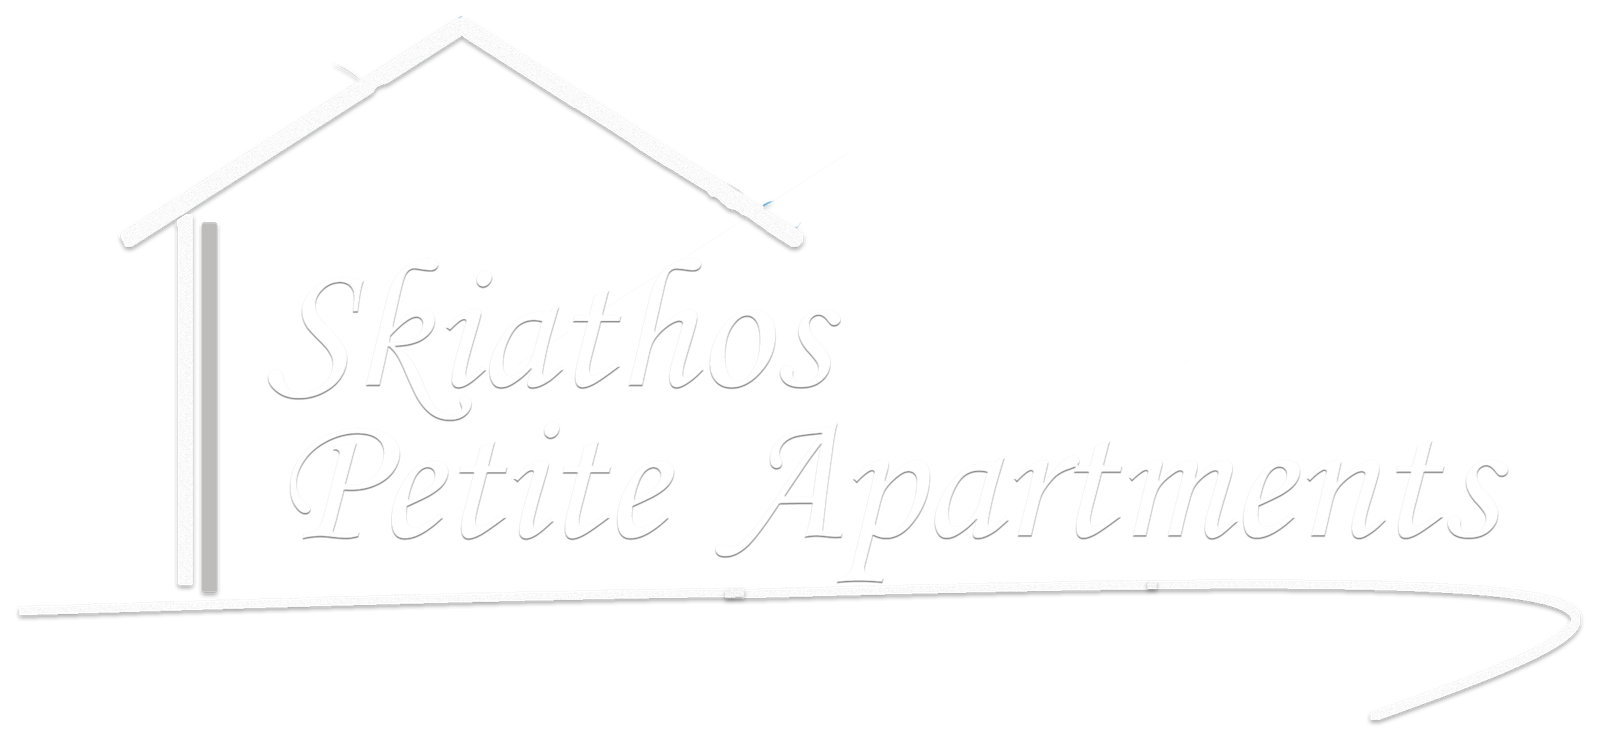 Skiathos Petite Apartments | Services - Skiathos Petite Apartments